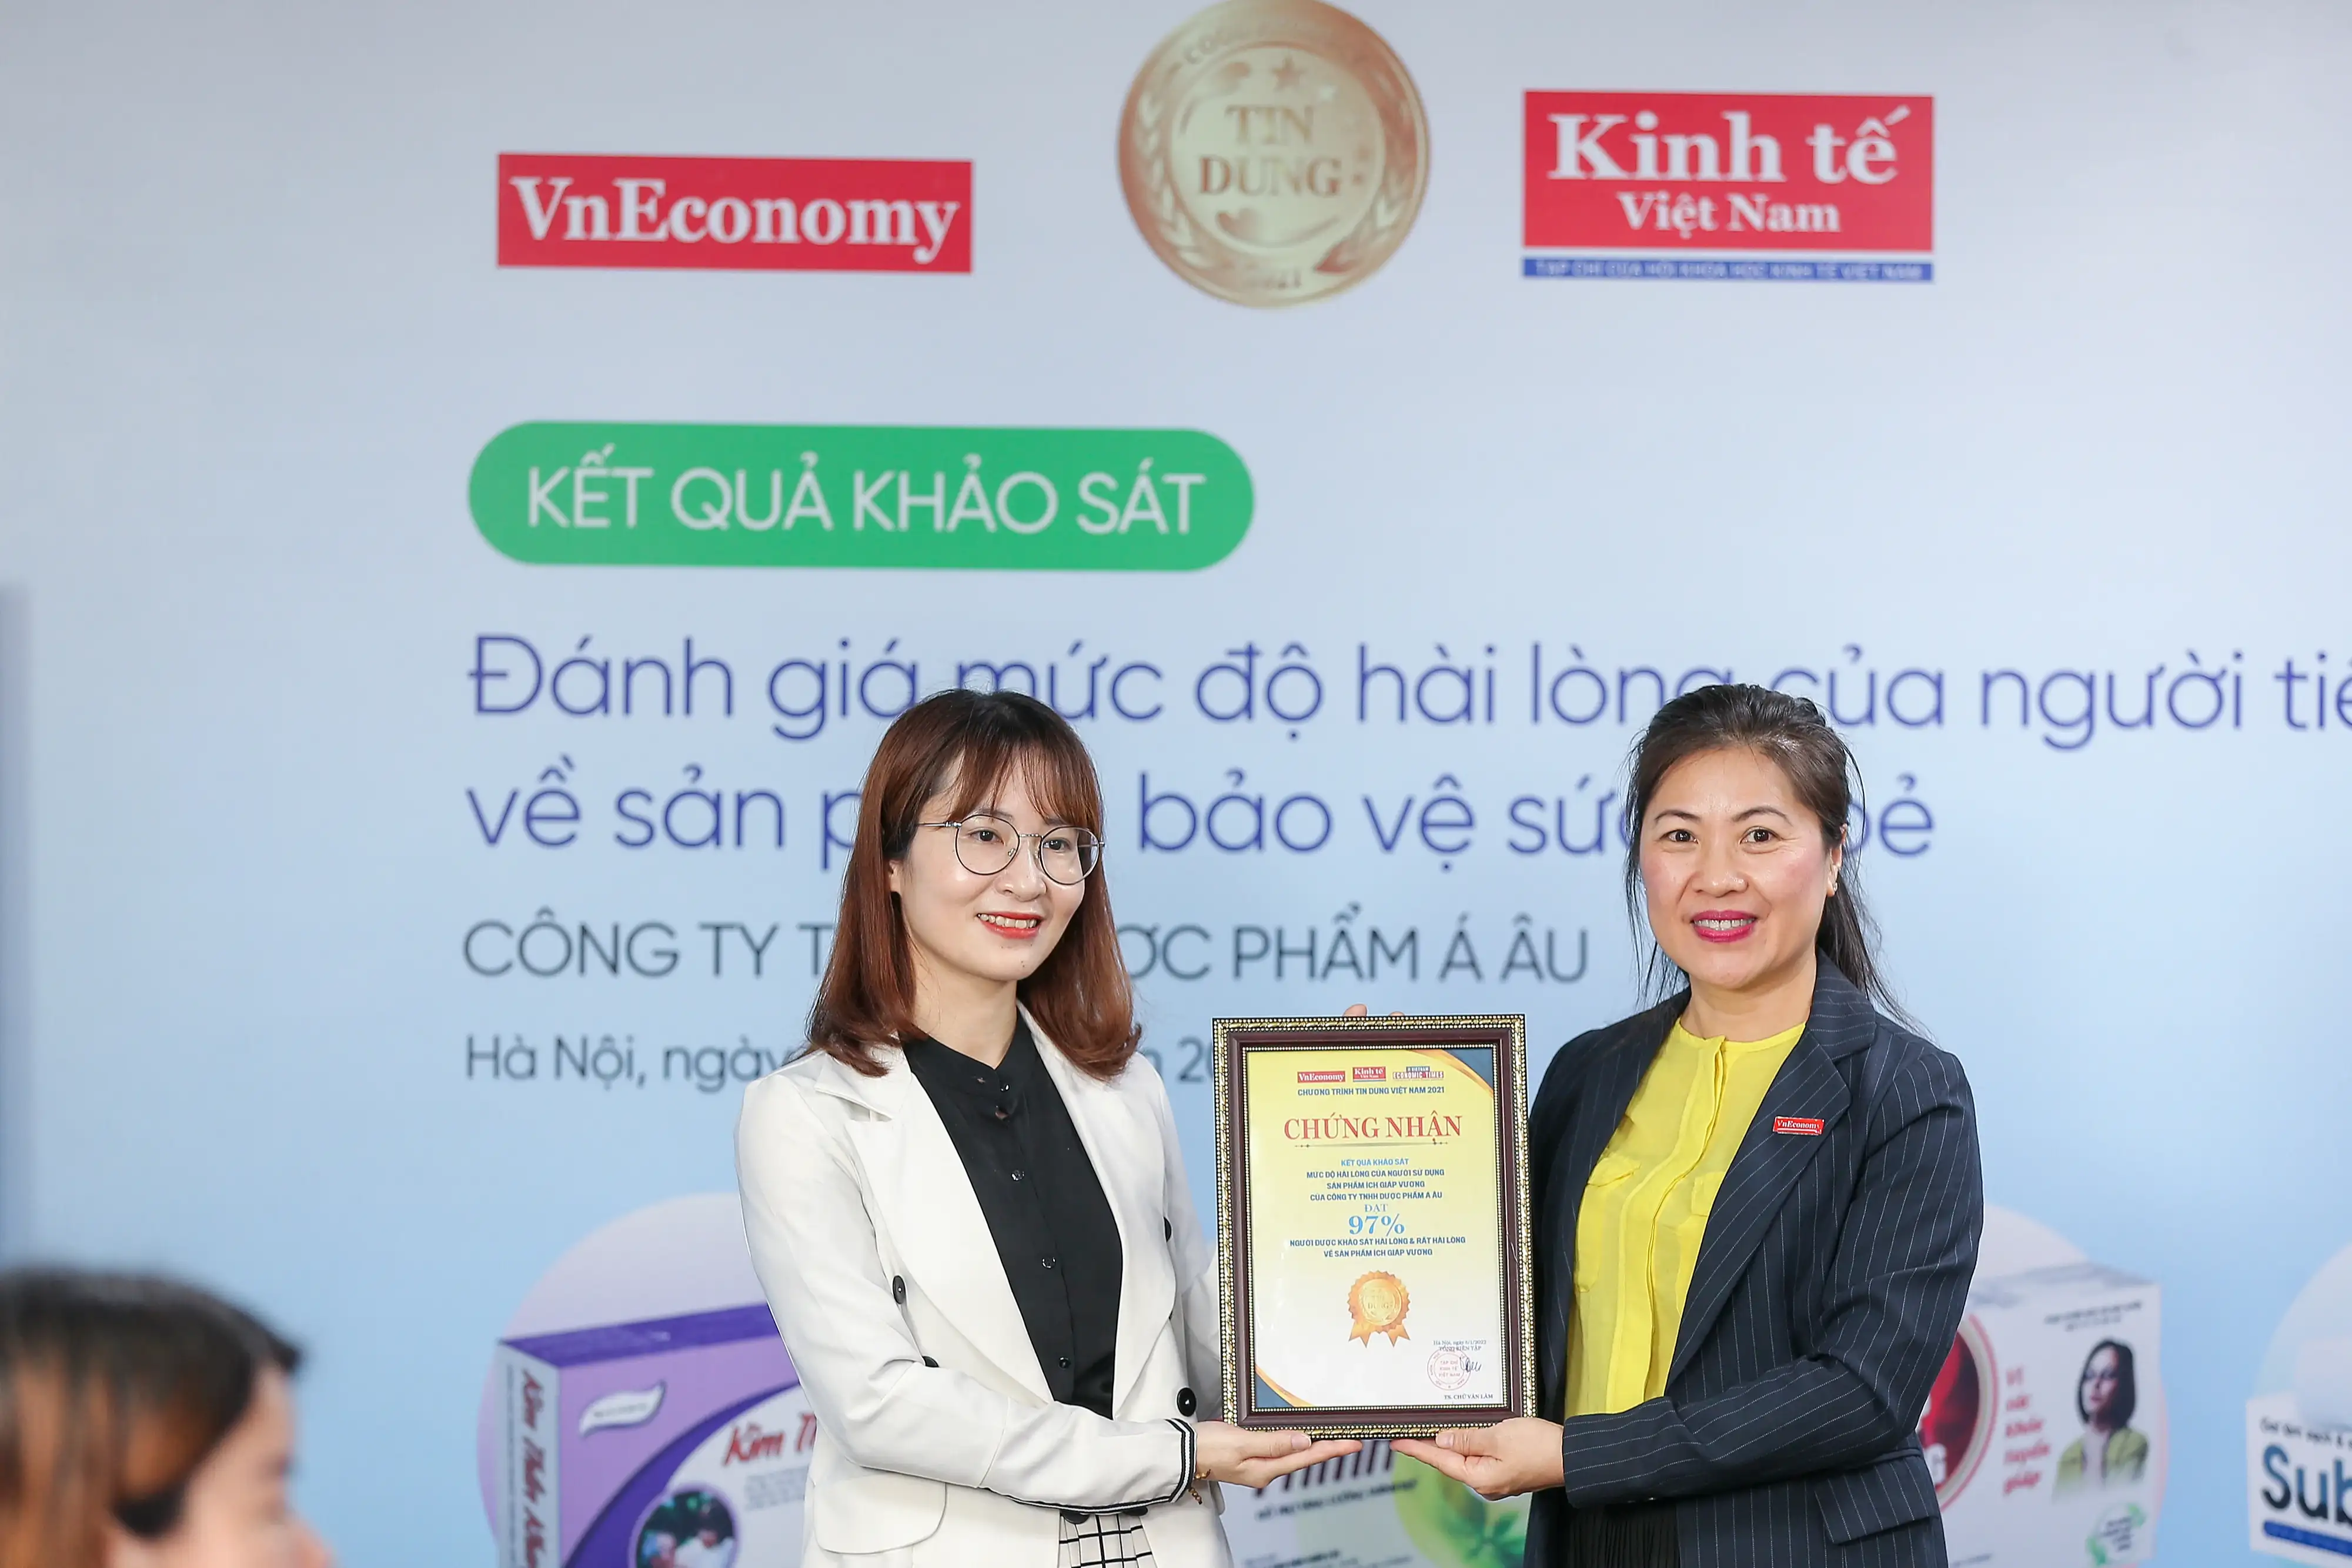 Các sản phẩm của Dược phẩm Á Âu: “95-97% khách hàng hài lòng và rất hài lòng khi sử dụng” - Theo khảo sát của Tạp chí Kinh tế Việt Nam